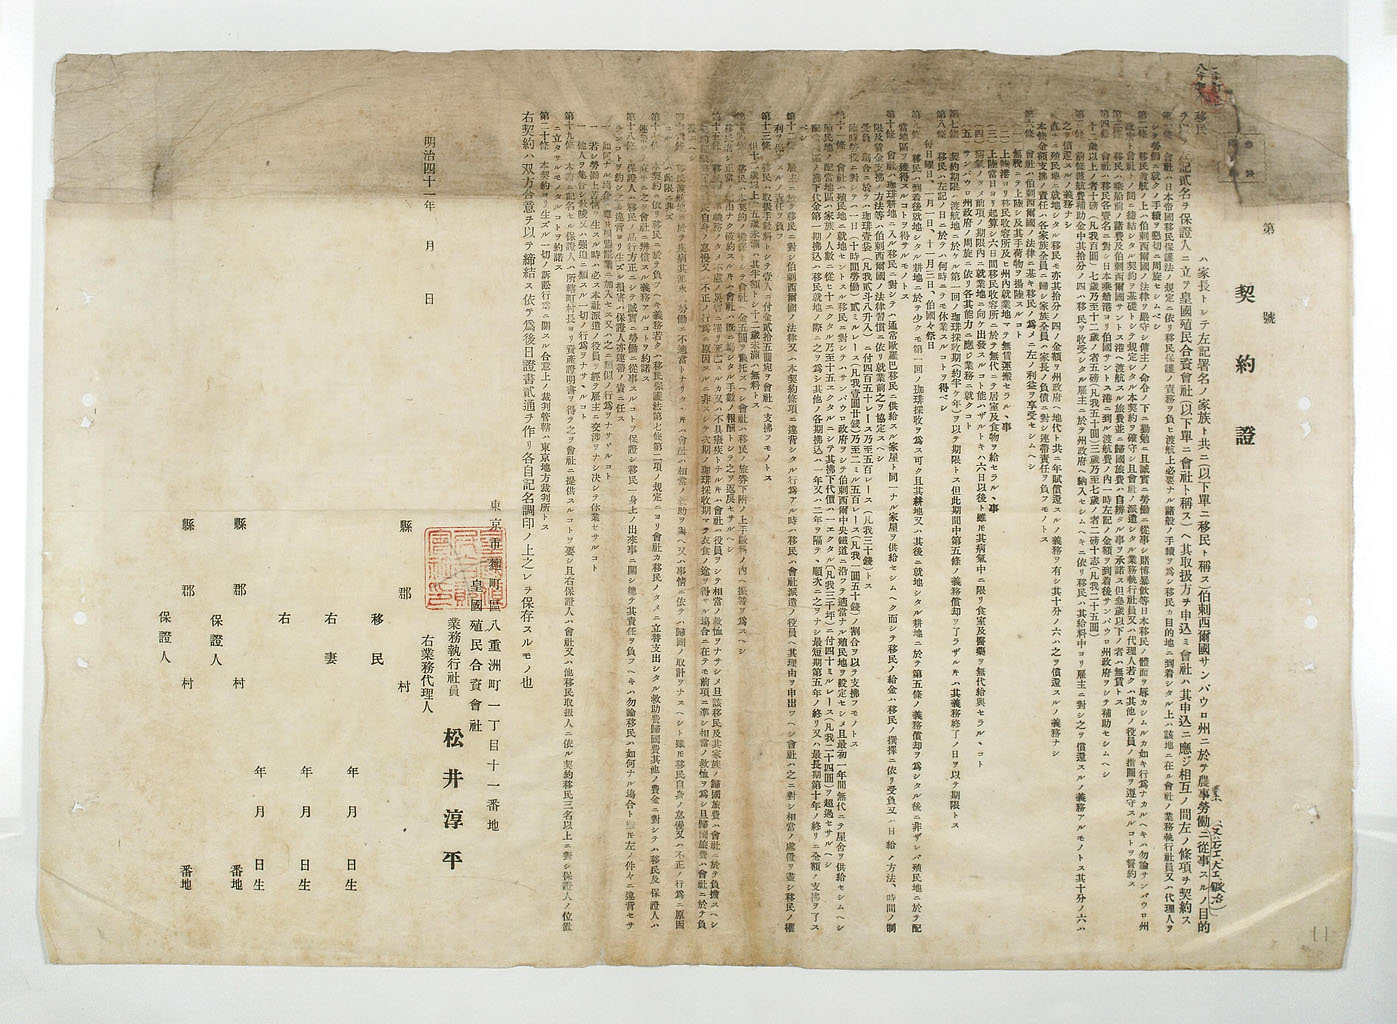 画像『皇国殖民会社と移民との間の契約書』